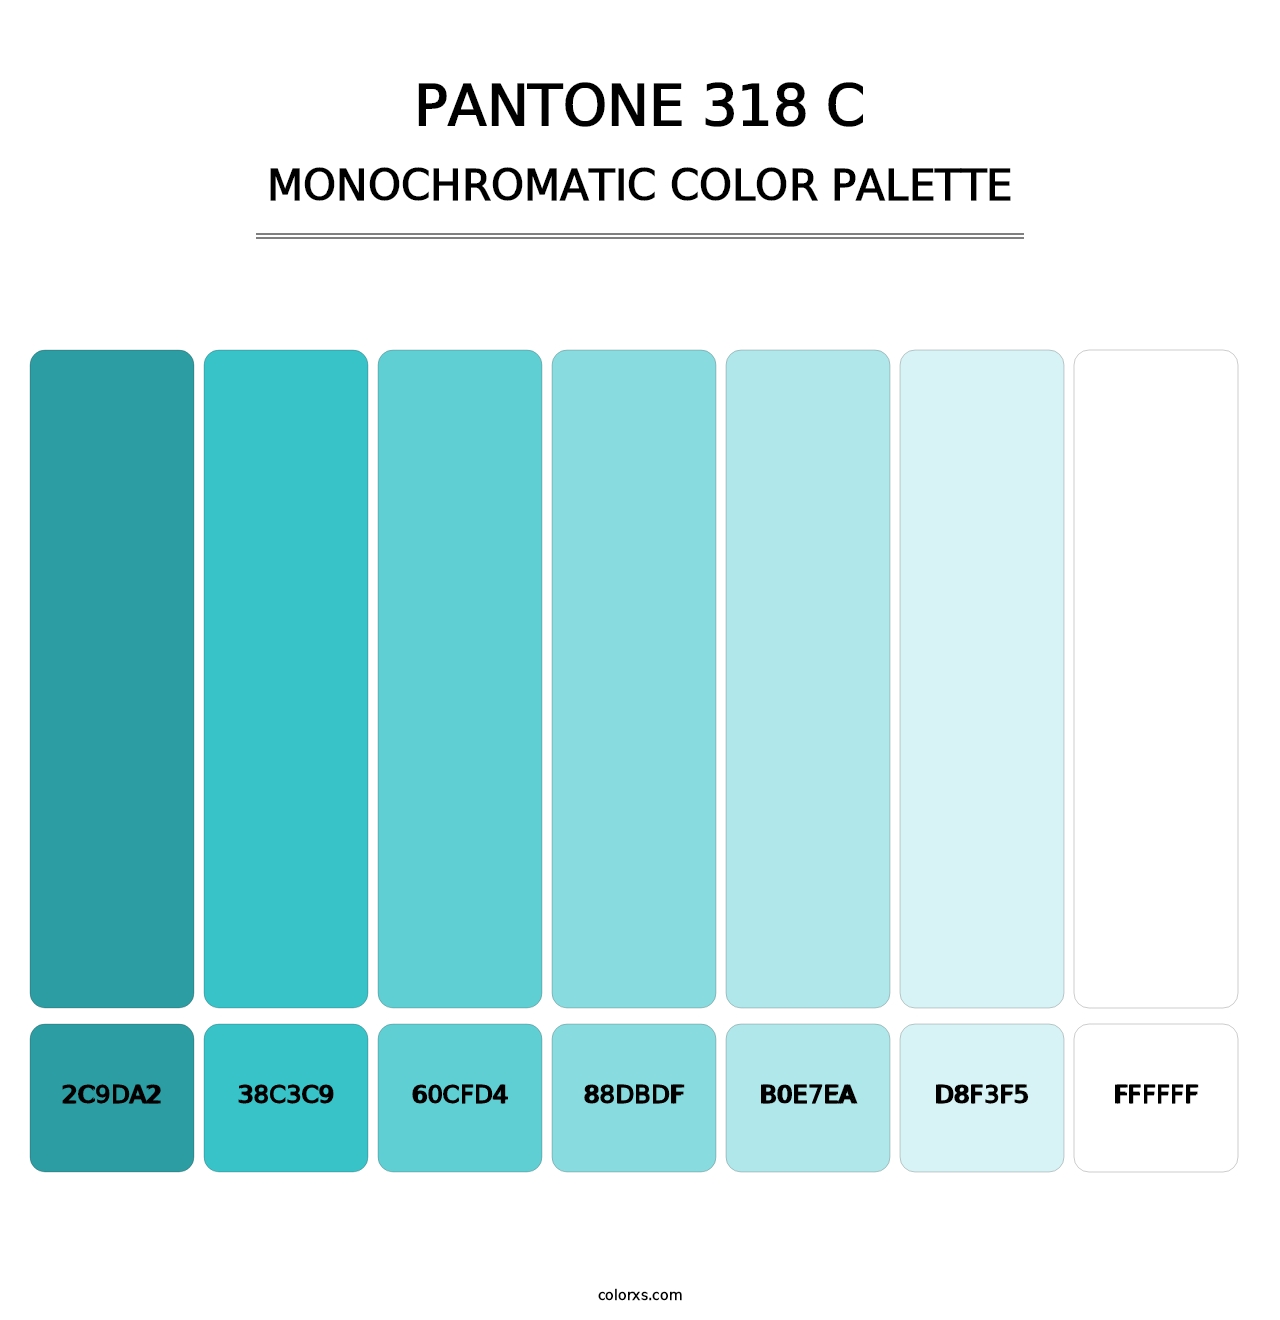 PANTONE 318 C - Monochromatic Color Palette